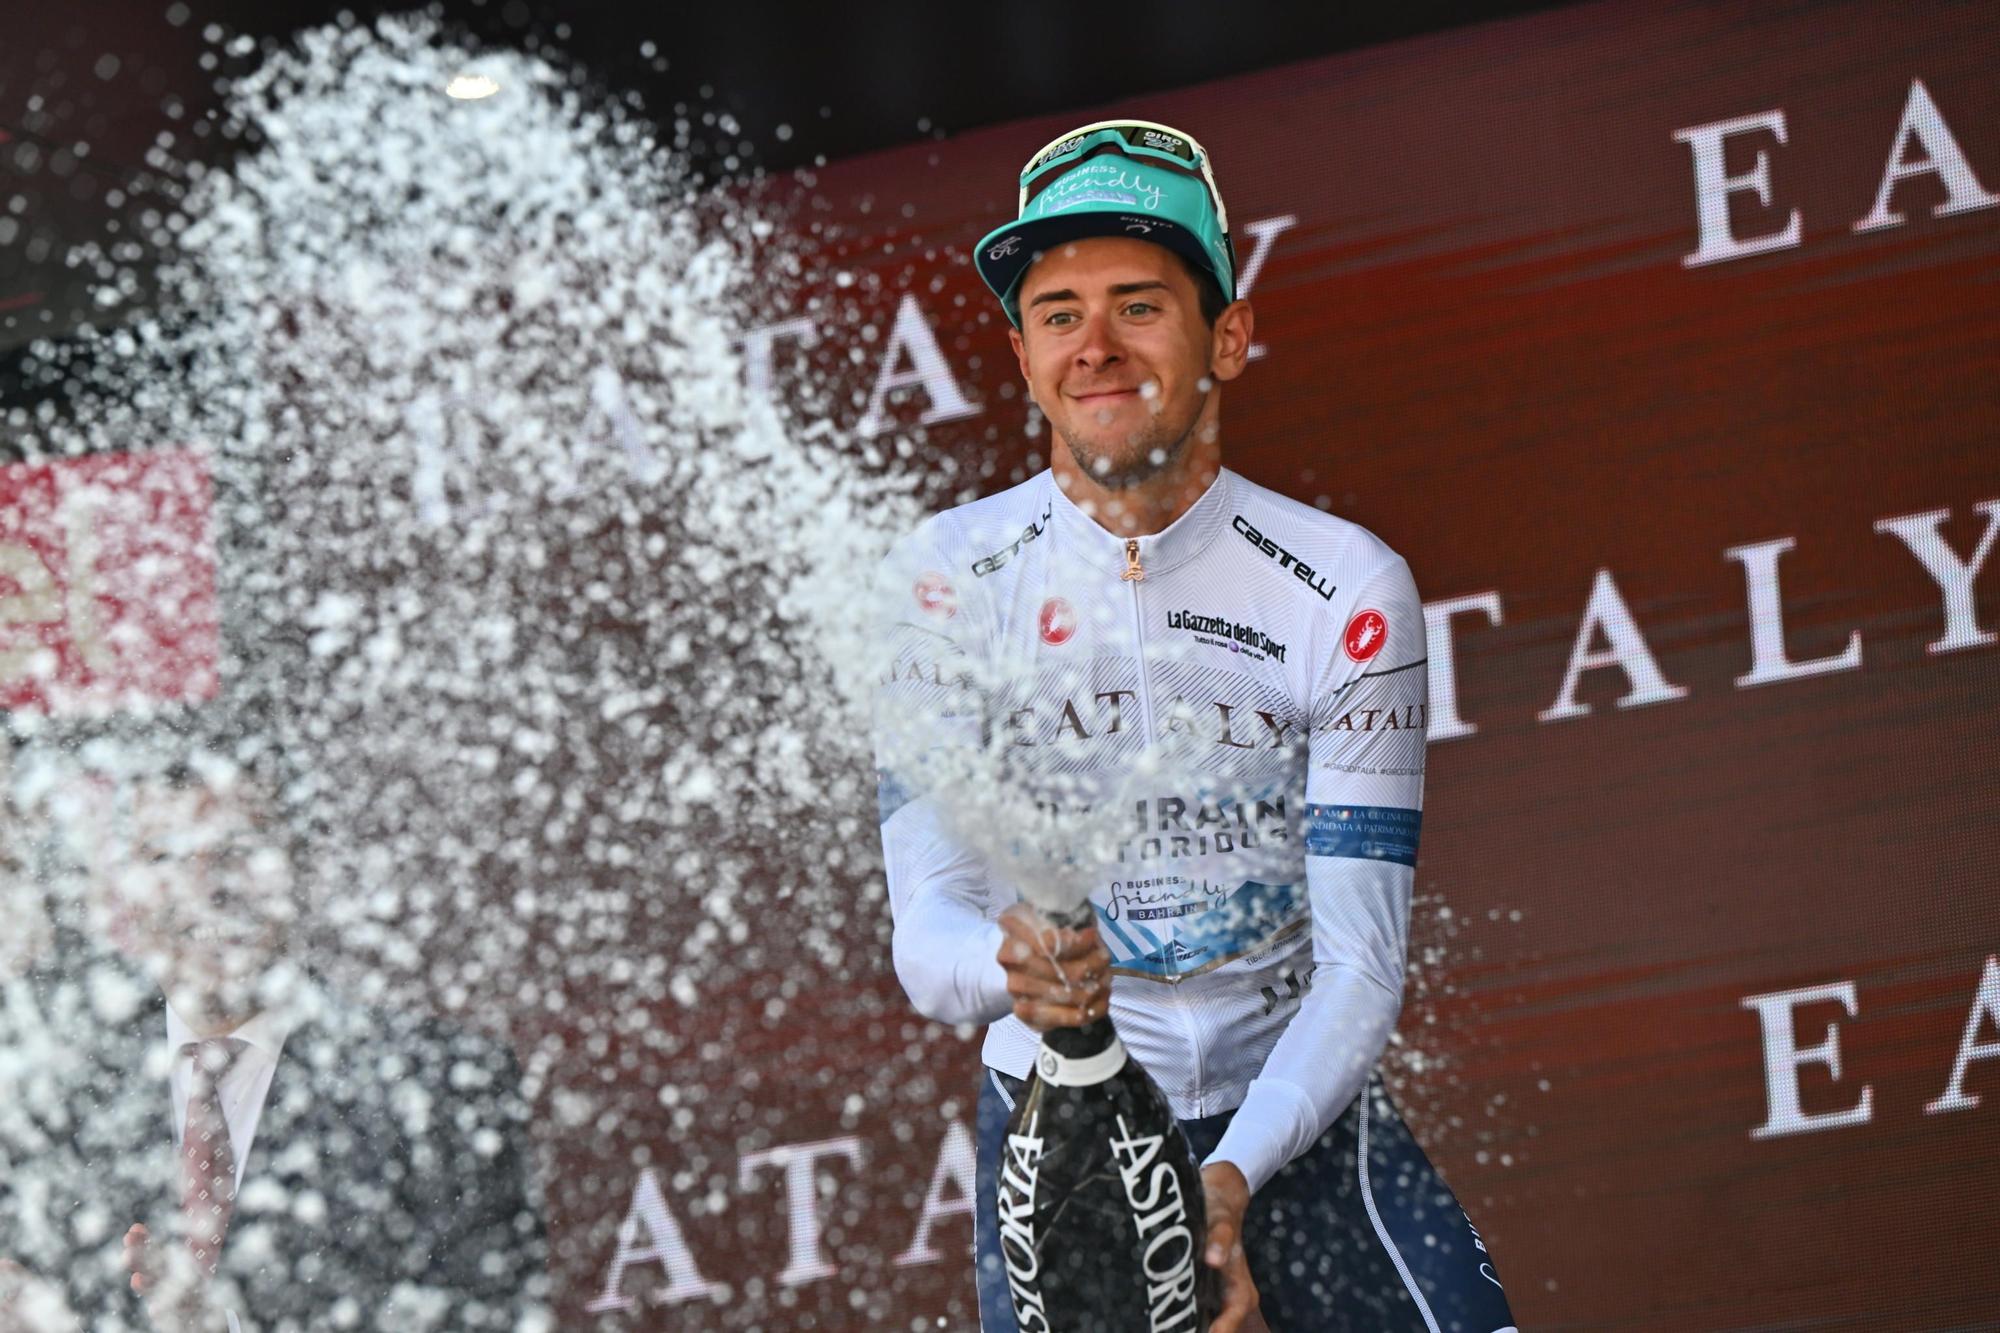 Giro d'Italia cycling tour - Stage 12